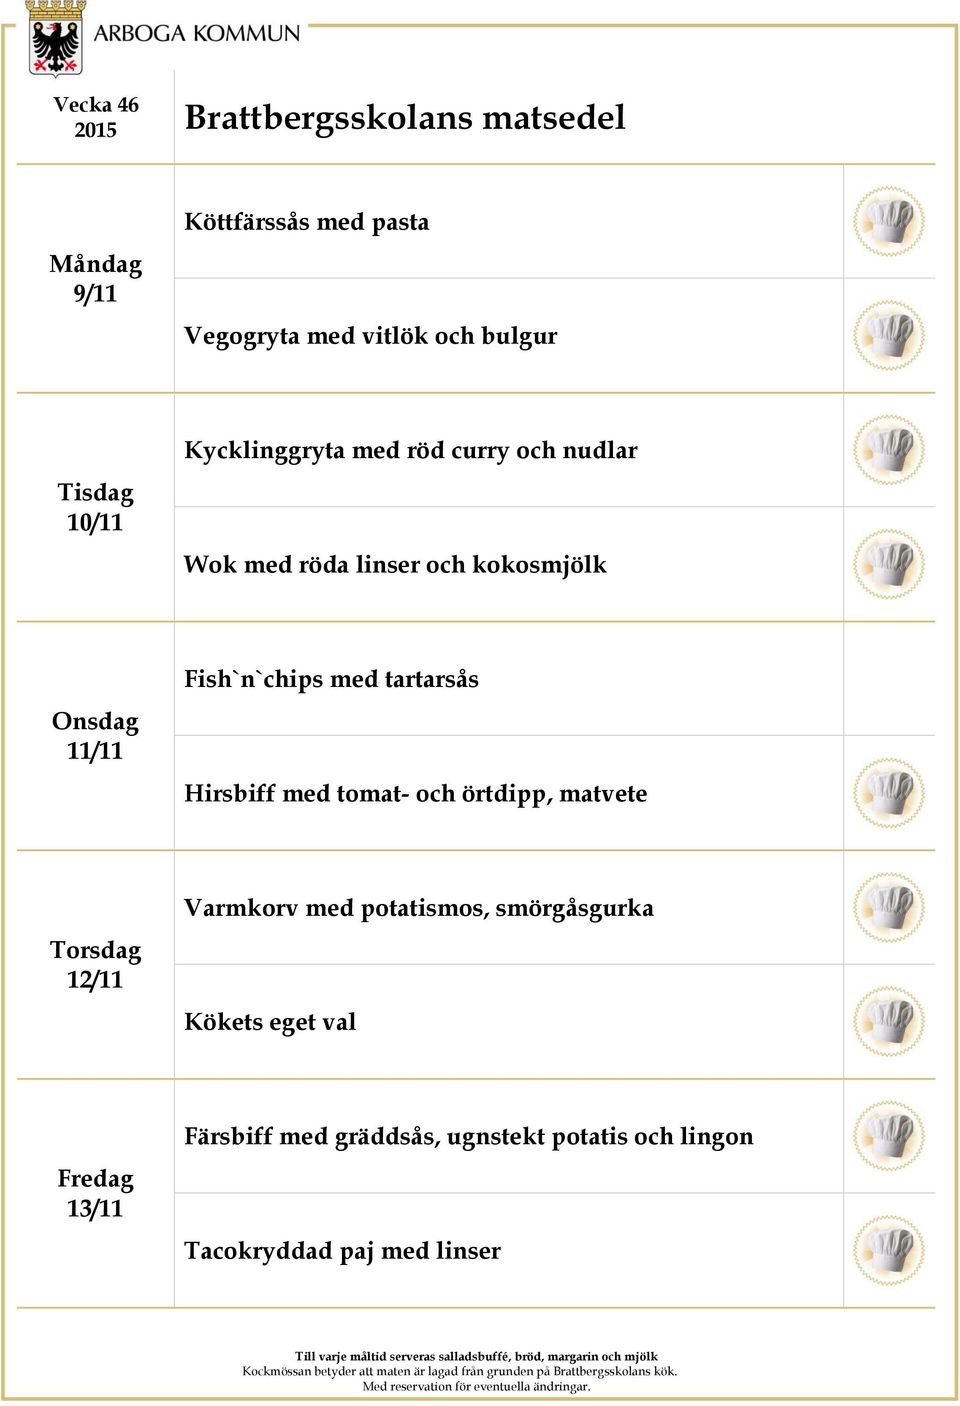 Hirsbiff med tomat- och örtdipp, matvete 12/11 Varmkorv med potatismos, smörgåsgurka Kökets